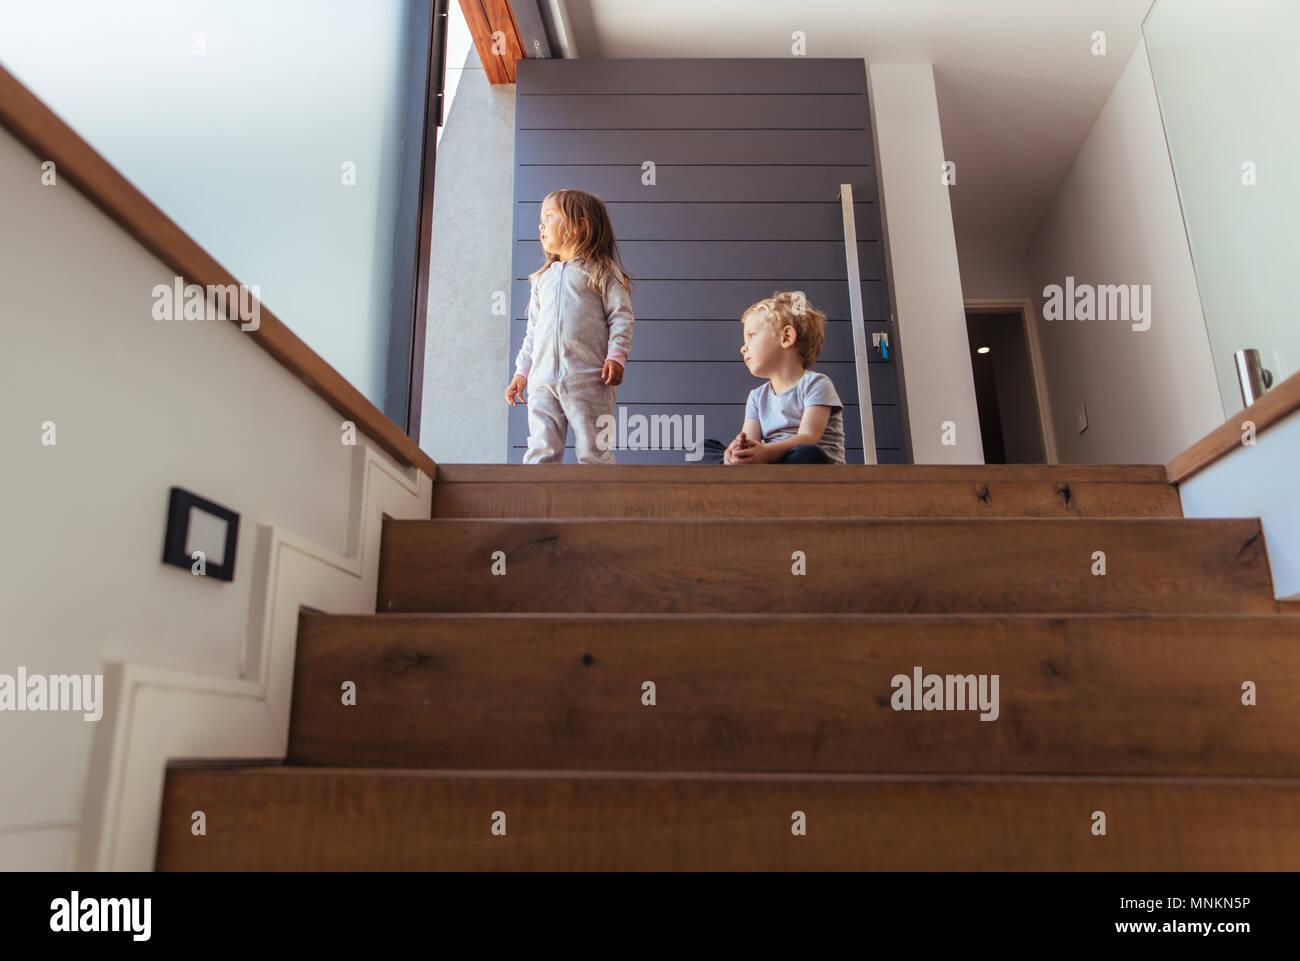 Bruder und Schwester sitzen auf der Treppe und außerhalb. Kinder zu Hause weg suchen nach etwas interessant. Stockfoto